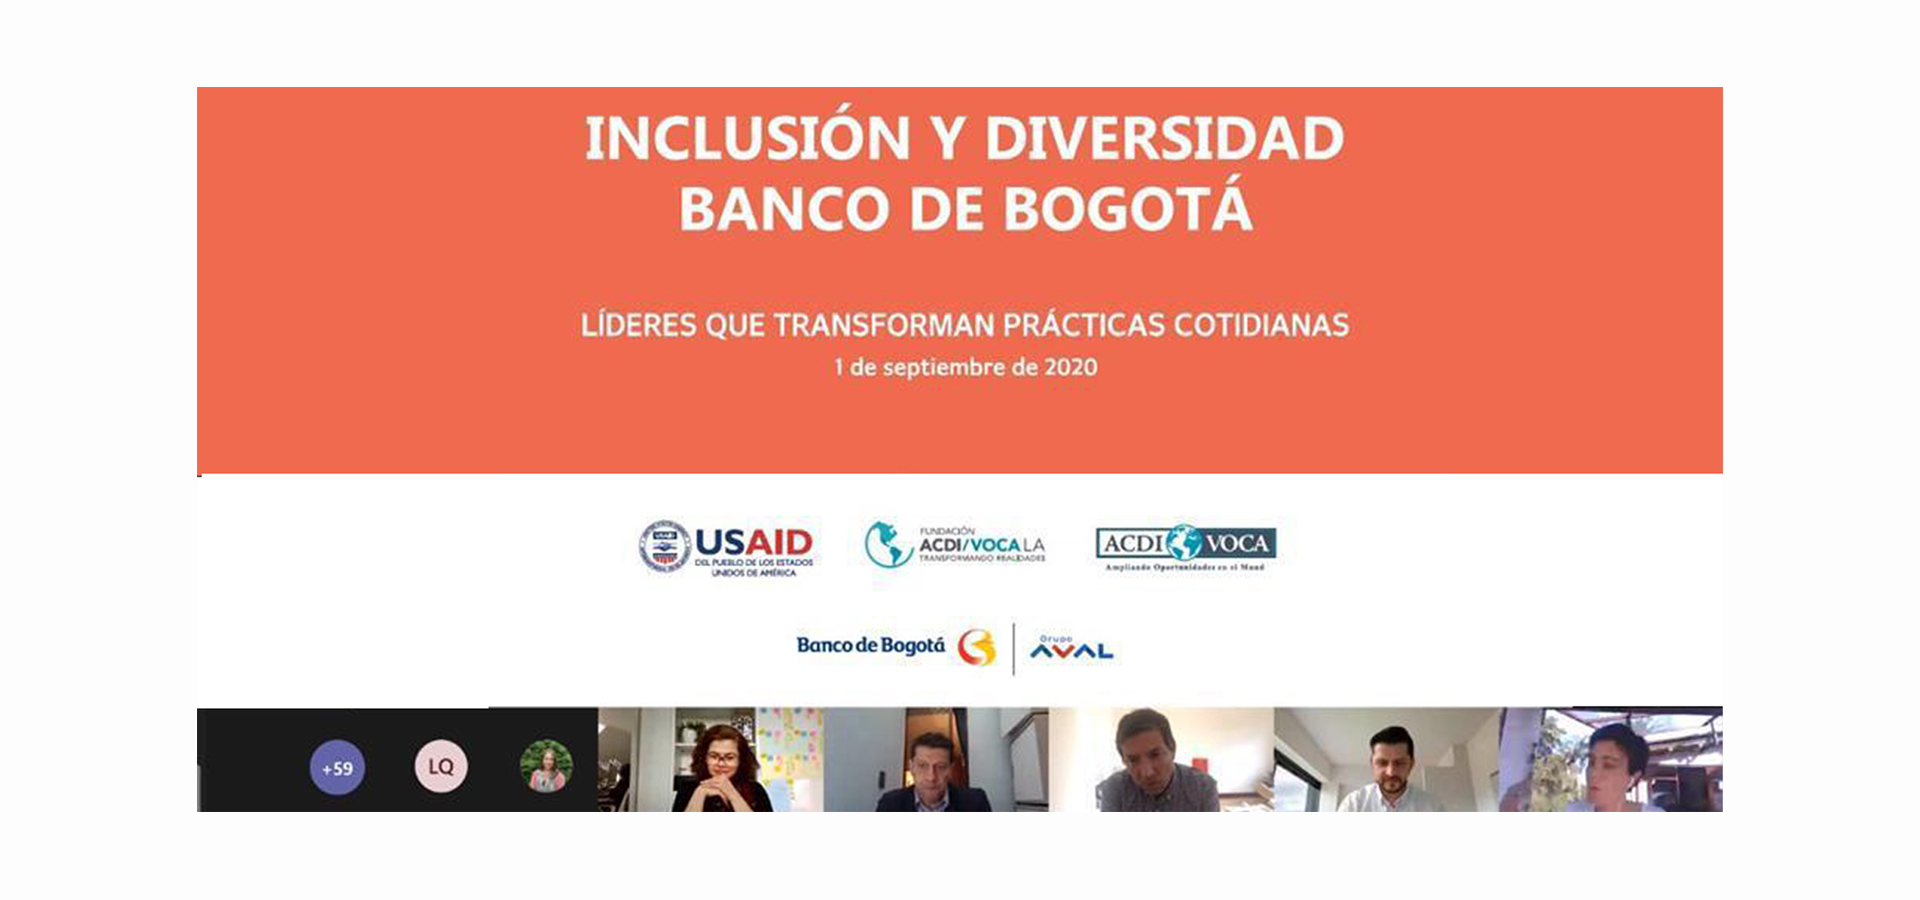 El  Banco de Bogotá promueve el cambio social y la inclusión consciente